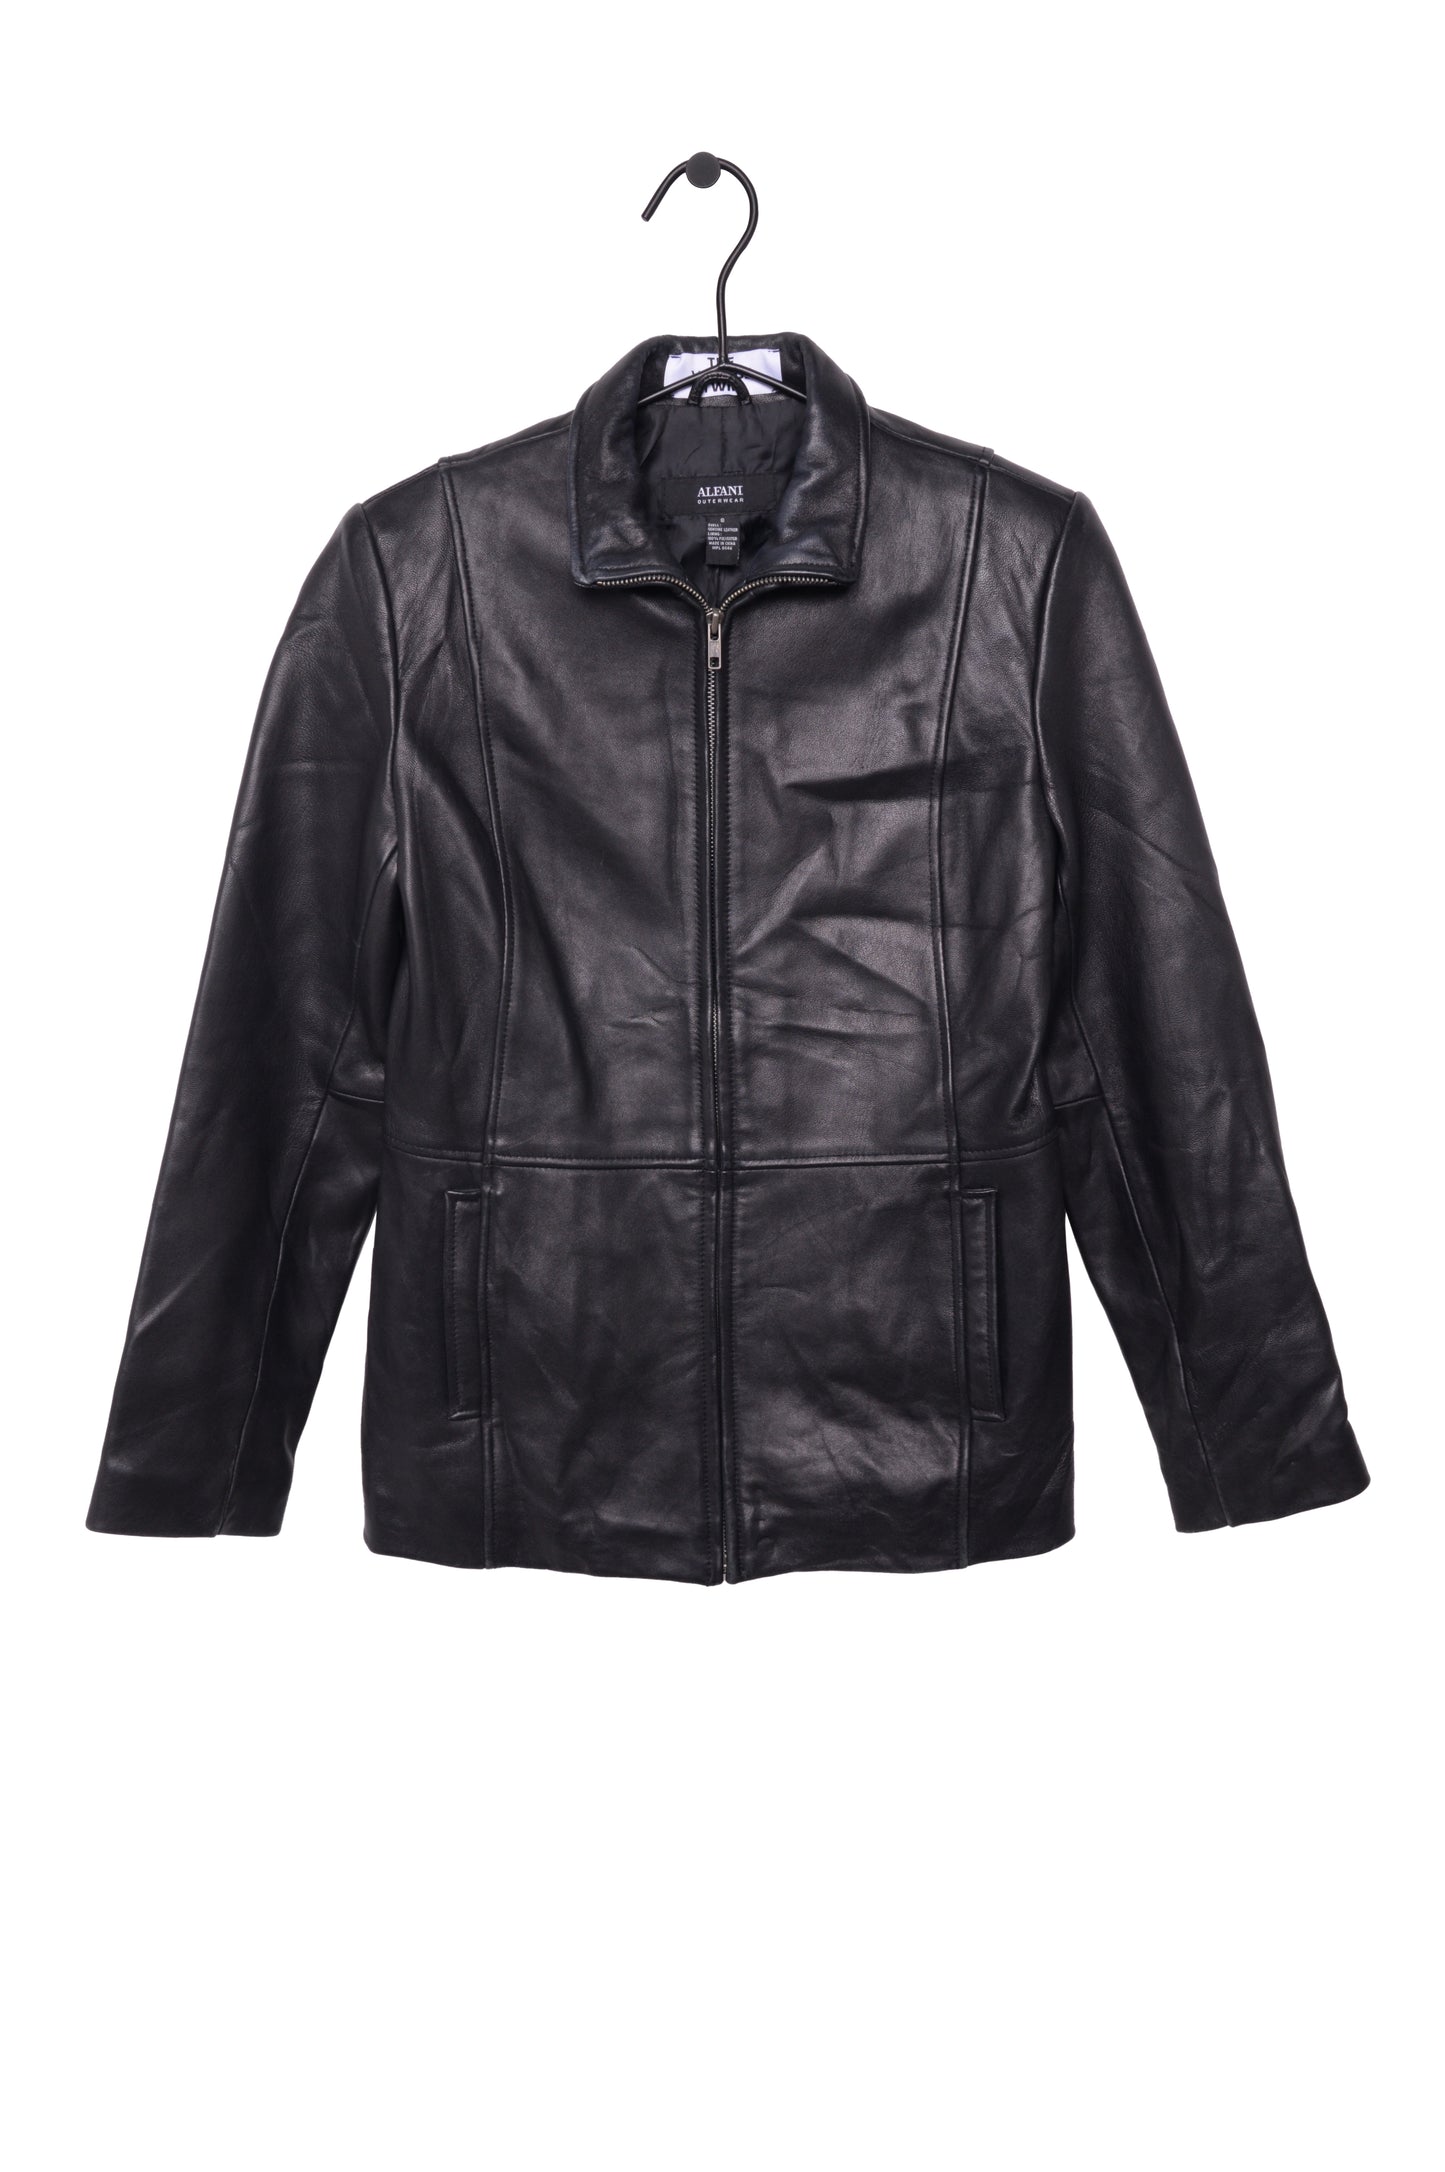 1990s Soft Leather Jacket